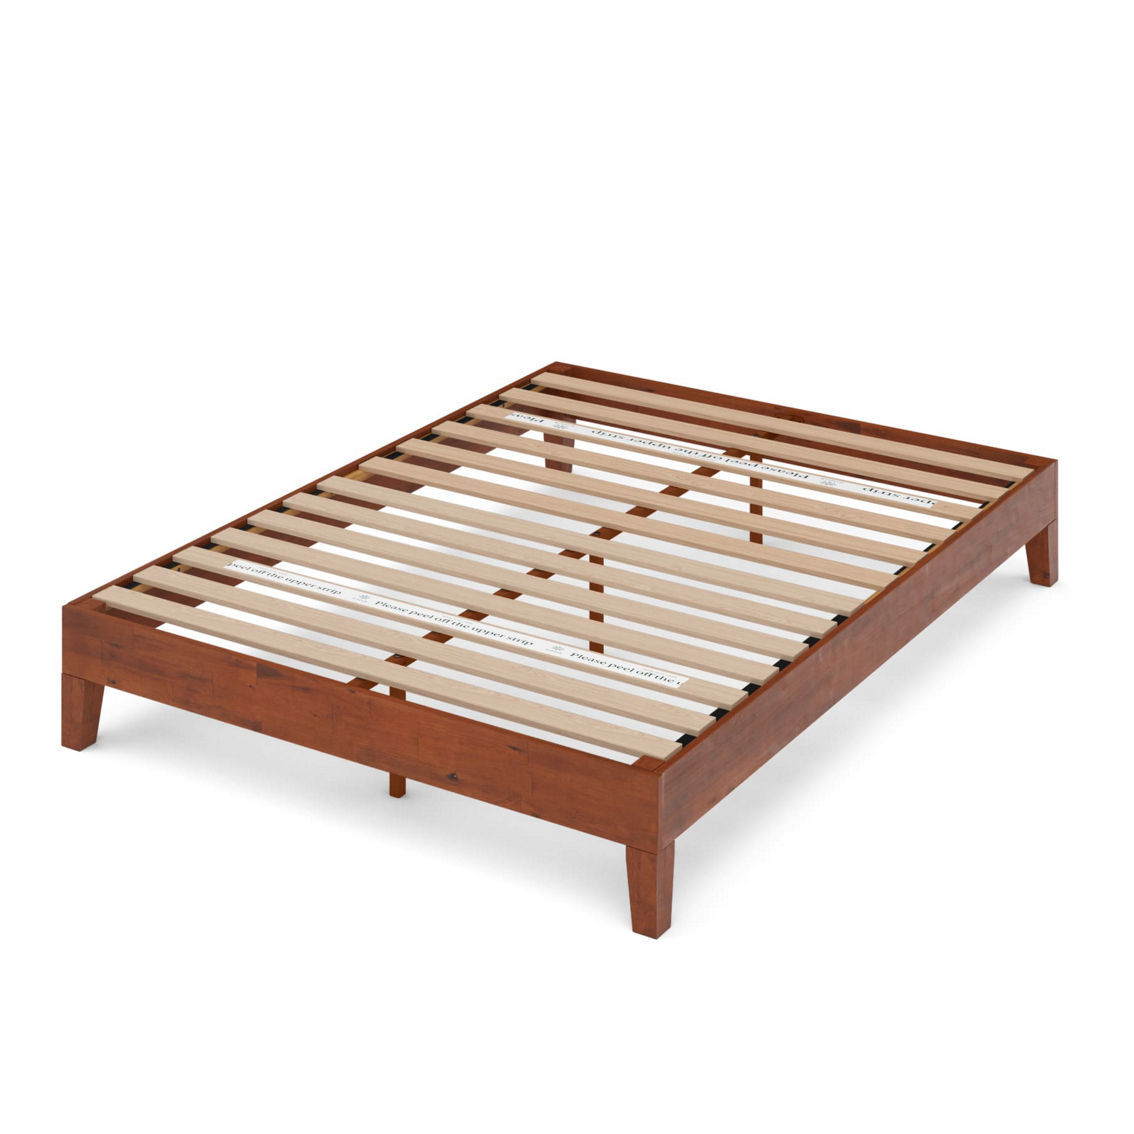 Zinus Solid Wood Platform Bed, Deluxe - Image 2 of 3